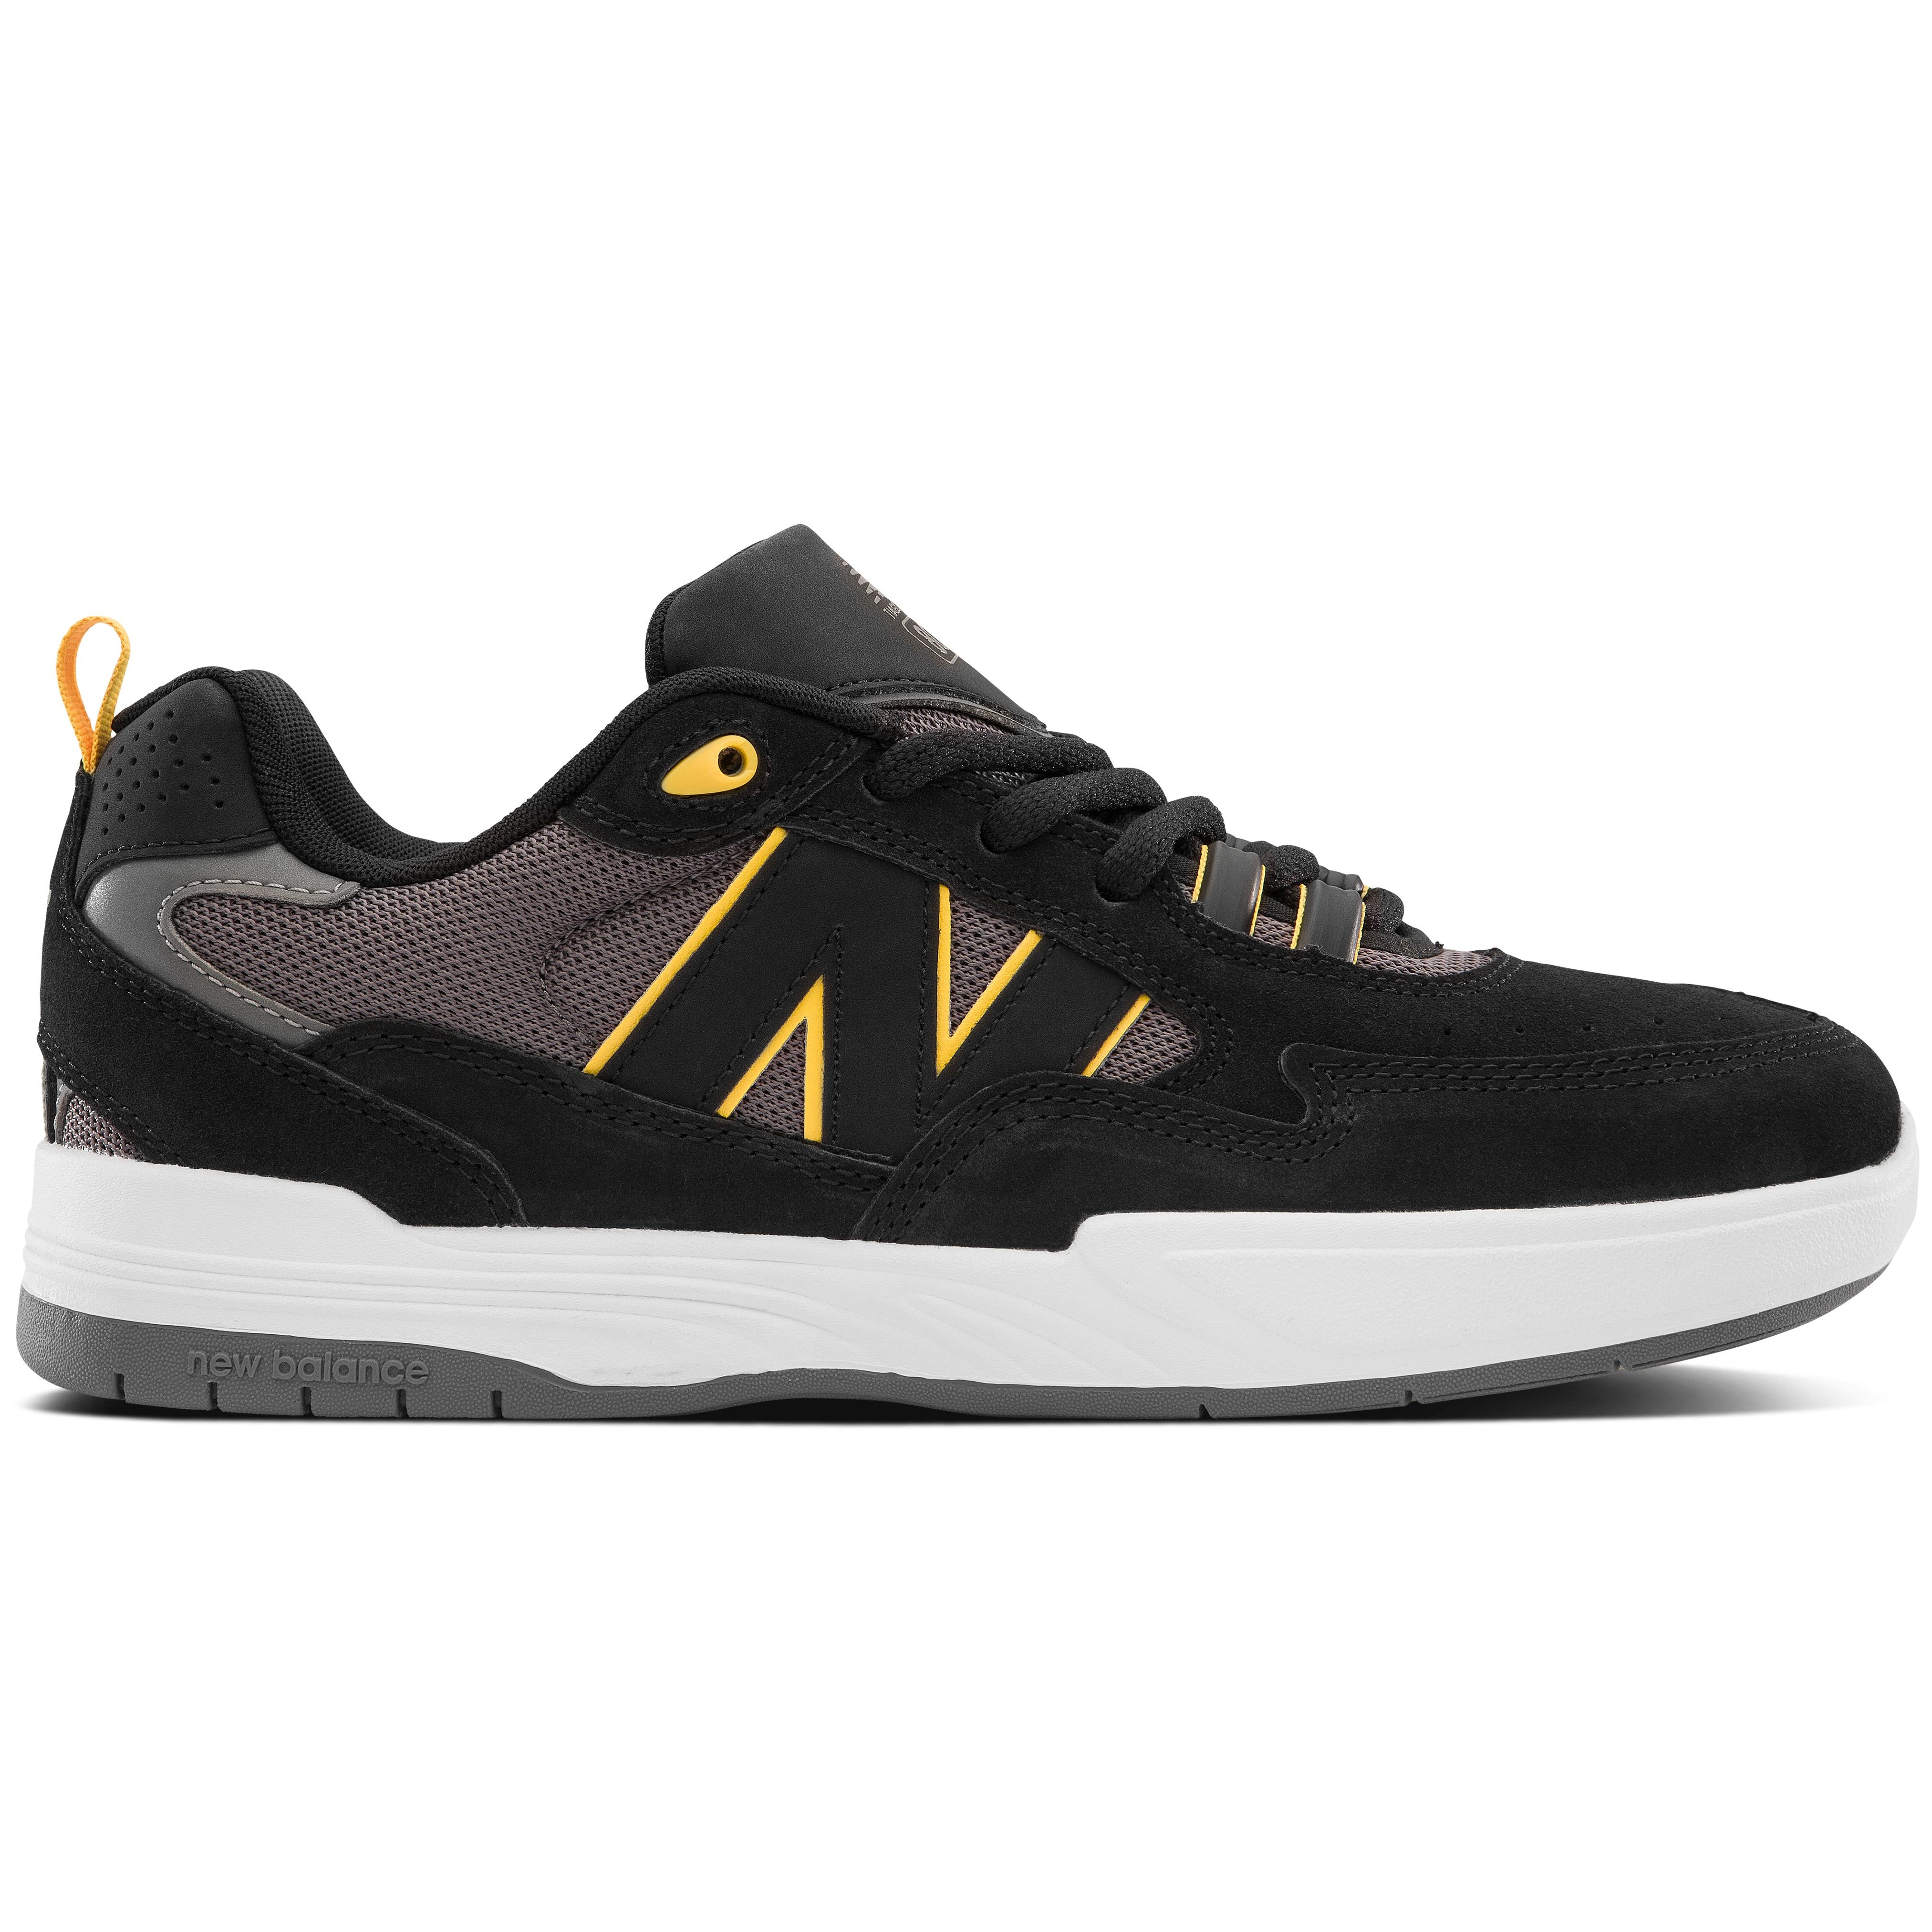 Black/Yellow NM808 Tiago Lemos NB Numeric Skate Shoe